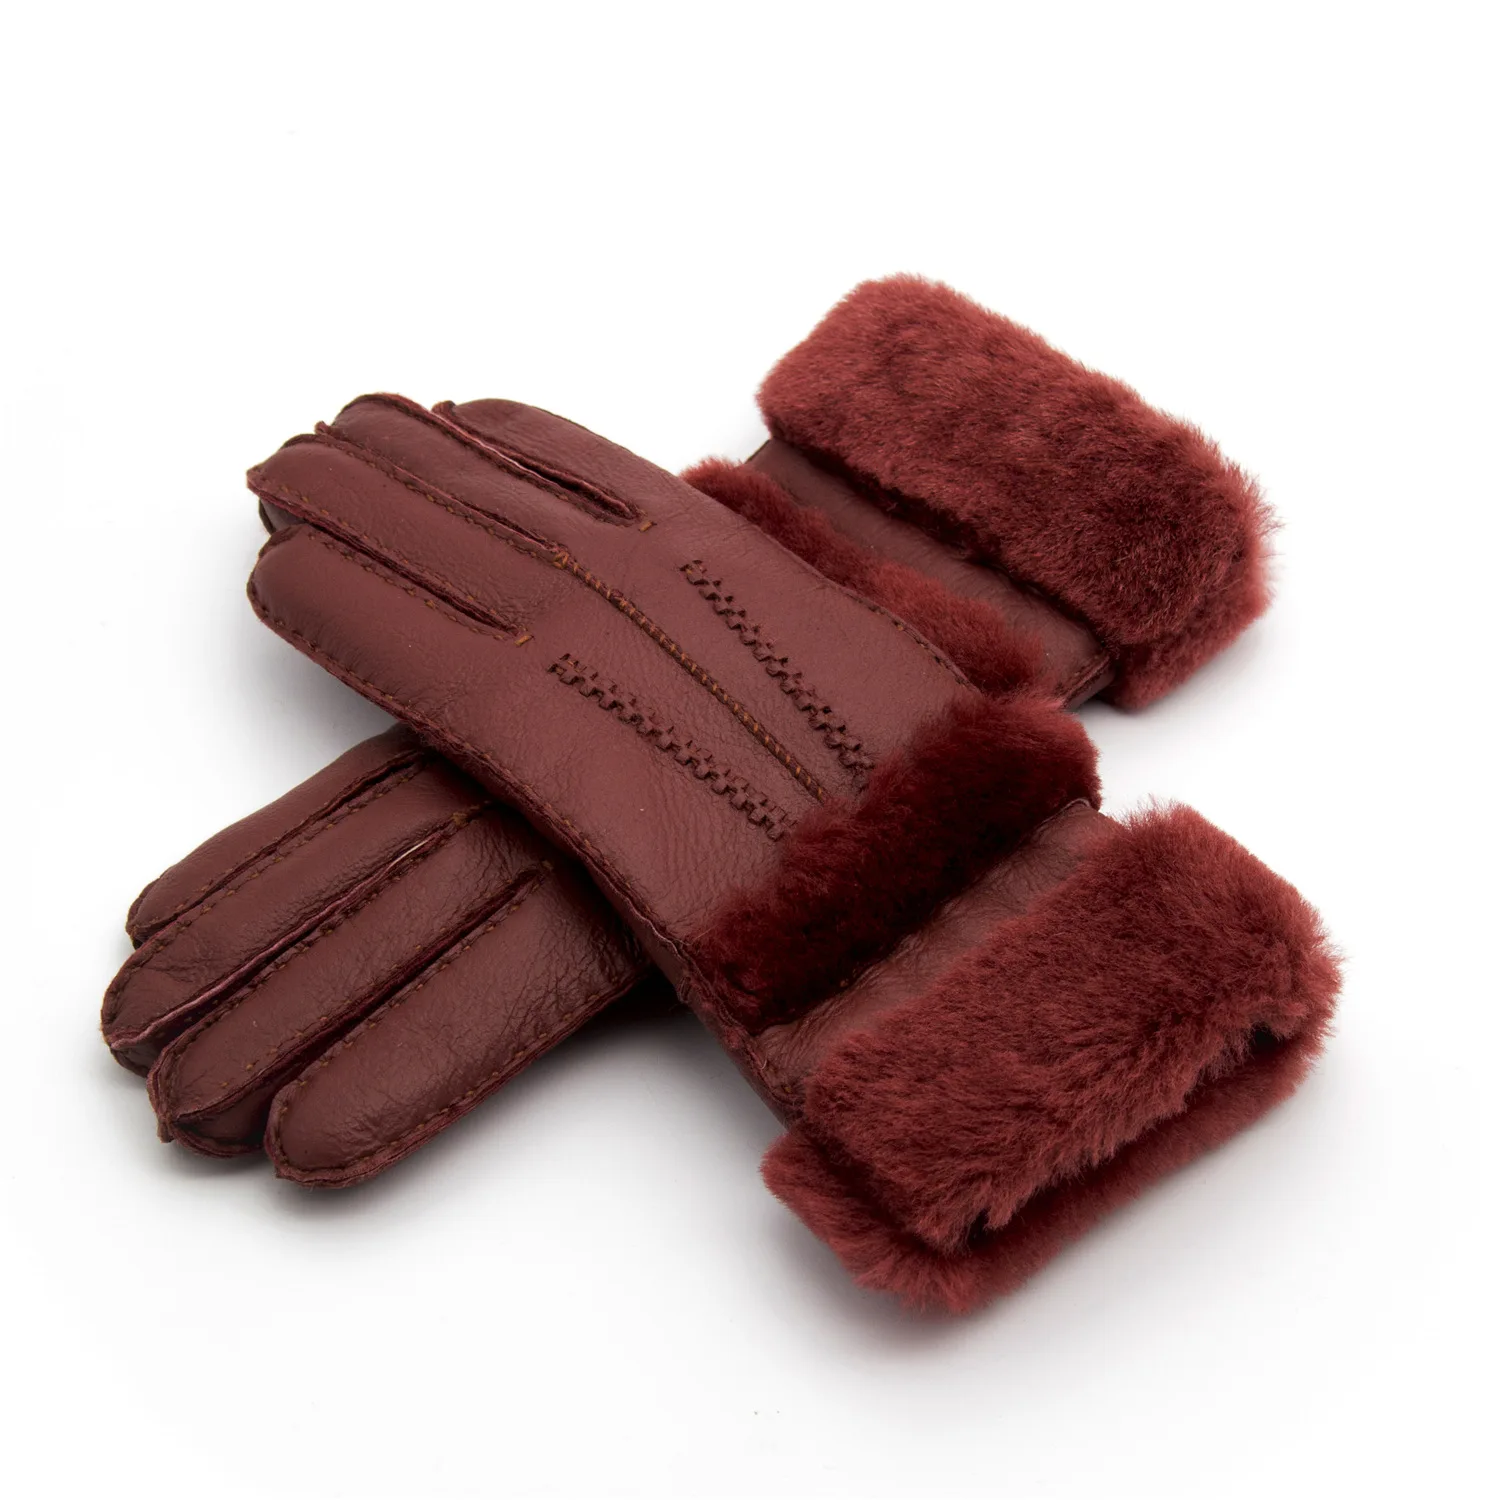 Перчатки женская зимняя рукавица теплая меховая кожа толстые модные перчатки овчина повседневная шерстяная одежда аксессуары одежда плед шерсть